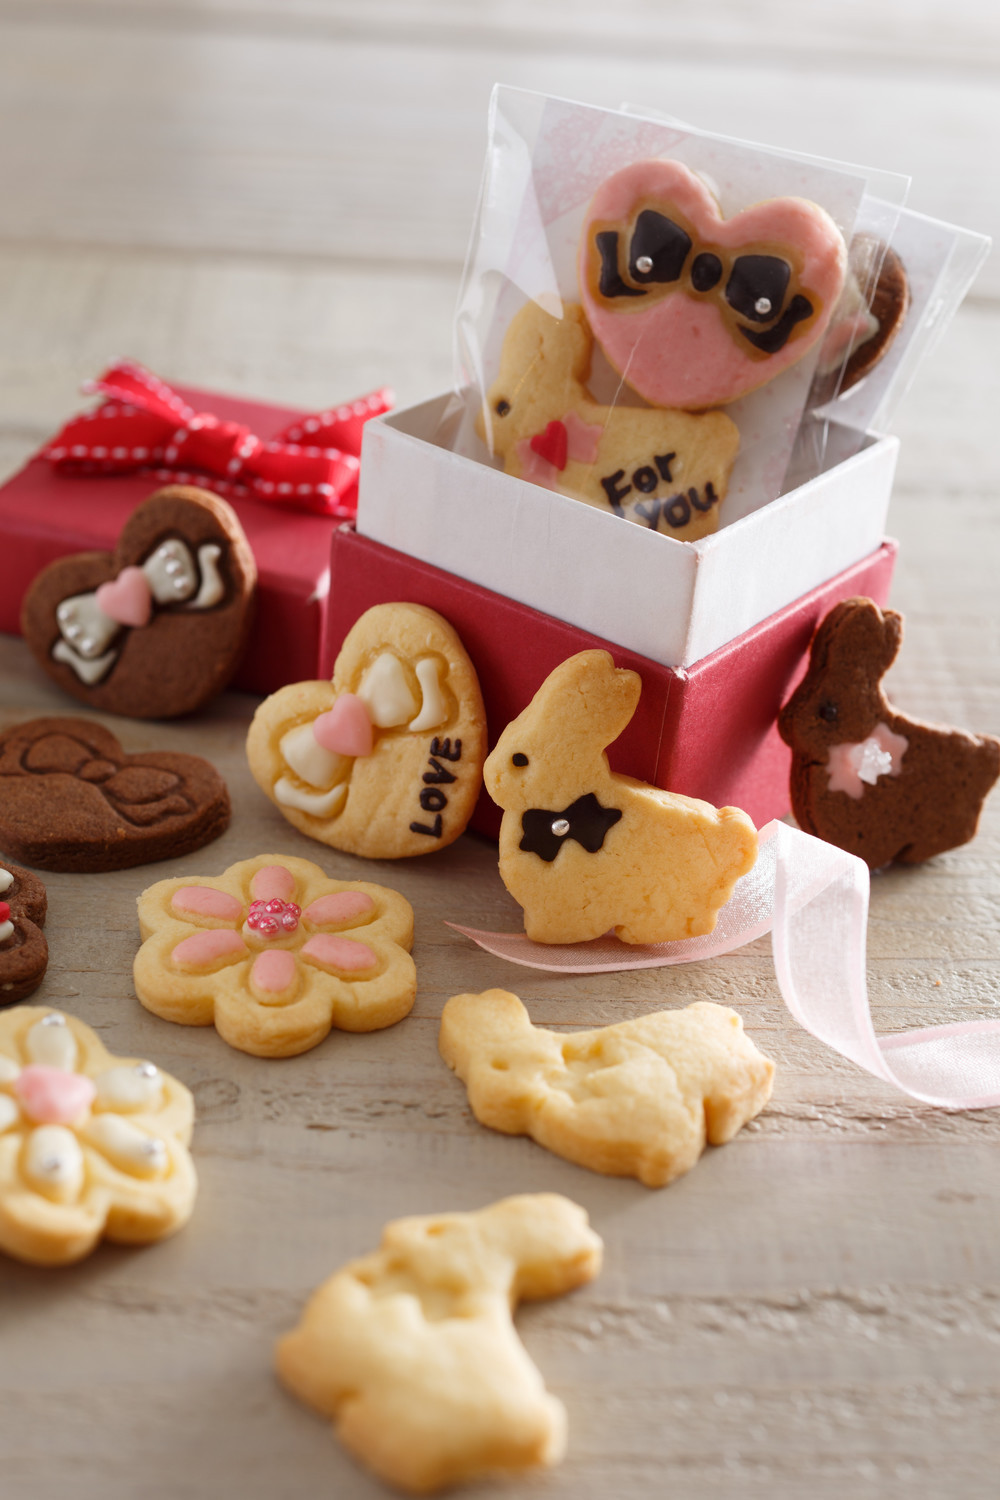 クッキー 意味 バレンタイン